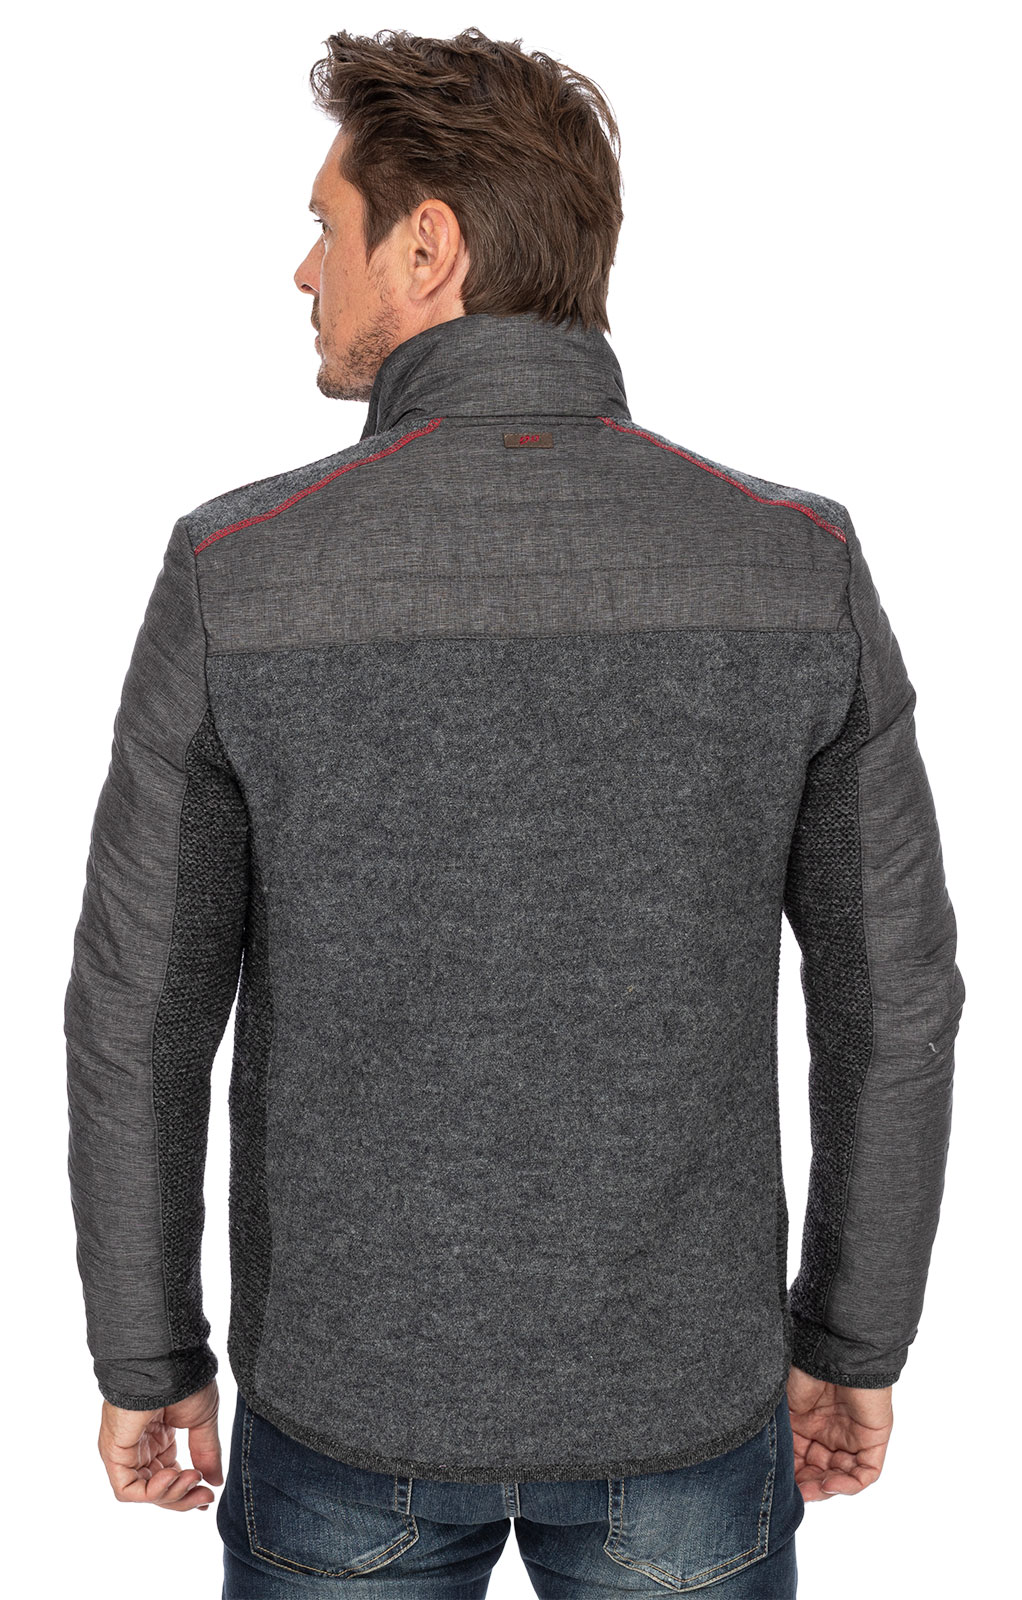 weitere Bilder von German traditional jacket MONTREAL medium gray red